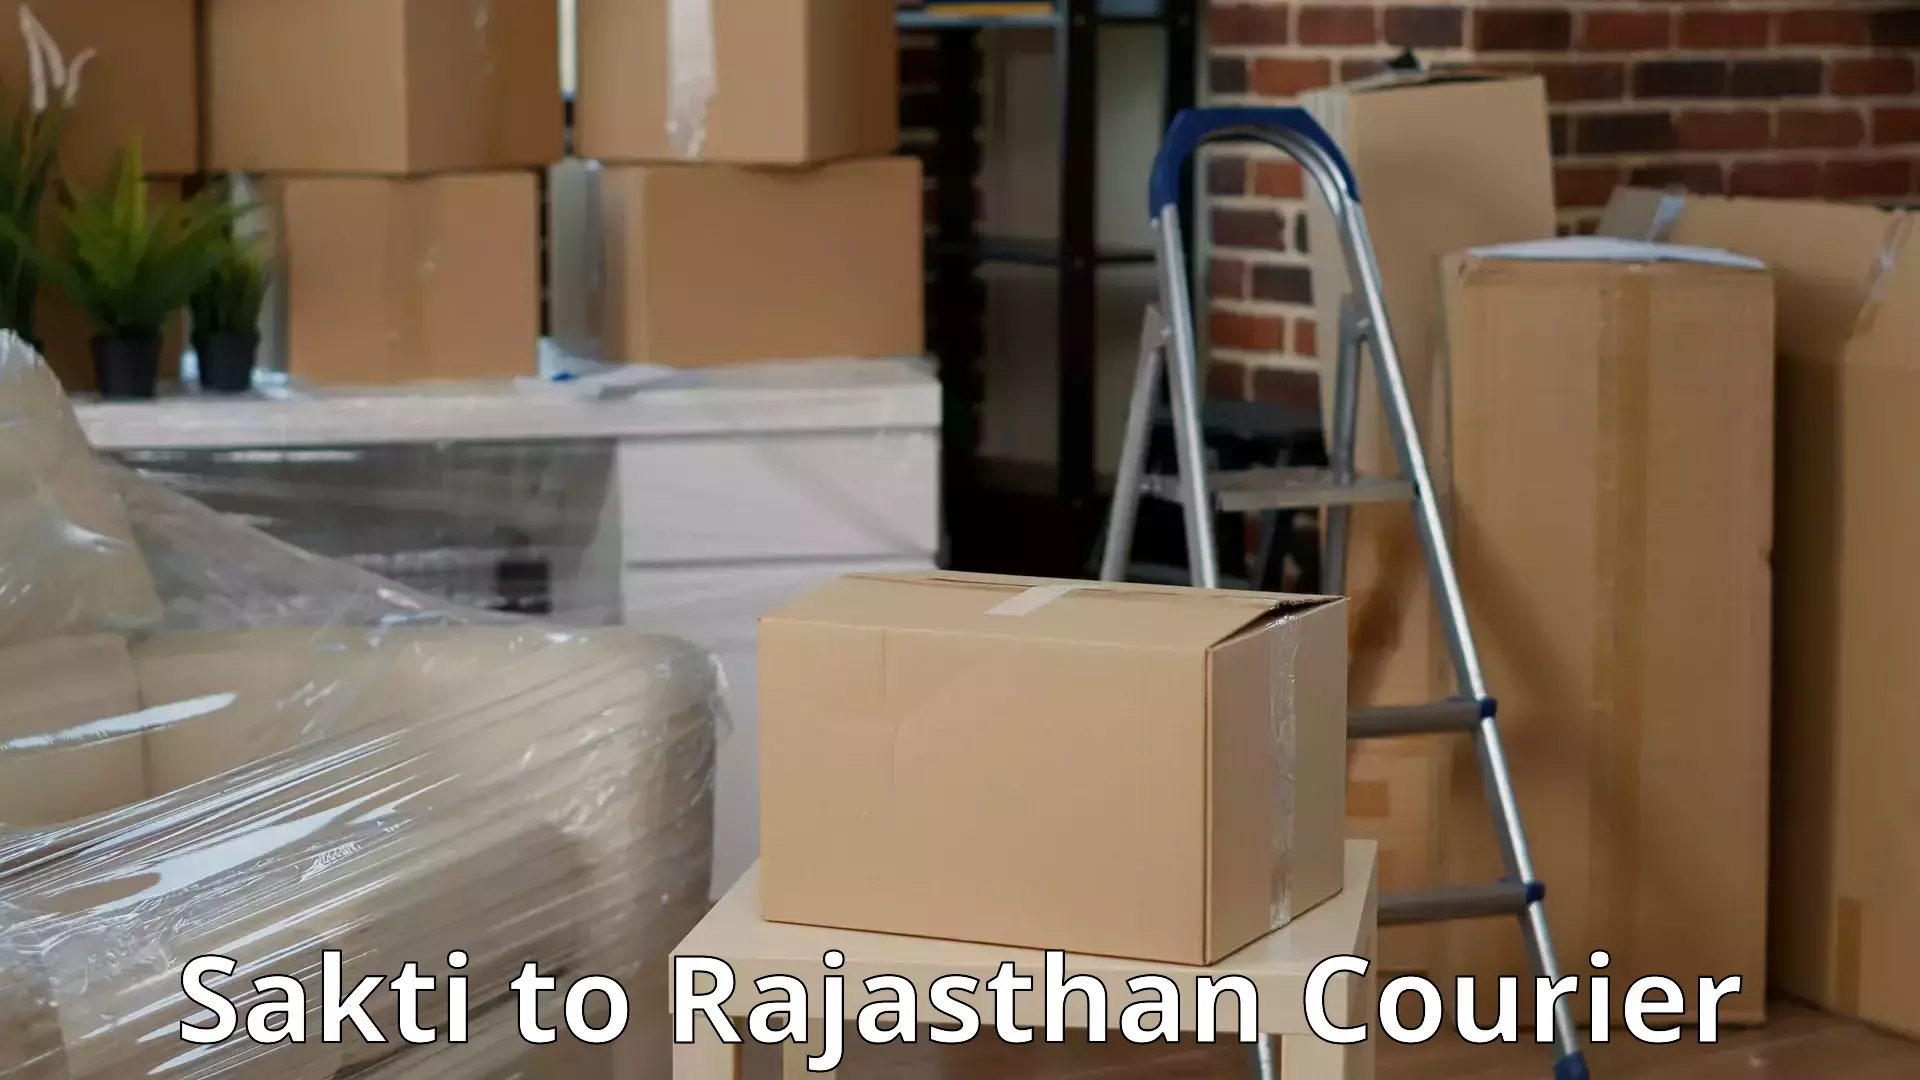 Furniture moving experts Sakti to Ajeetgarh